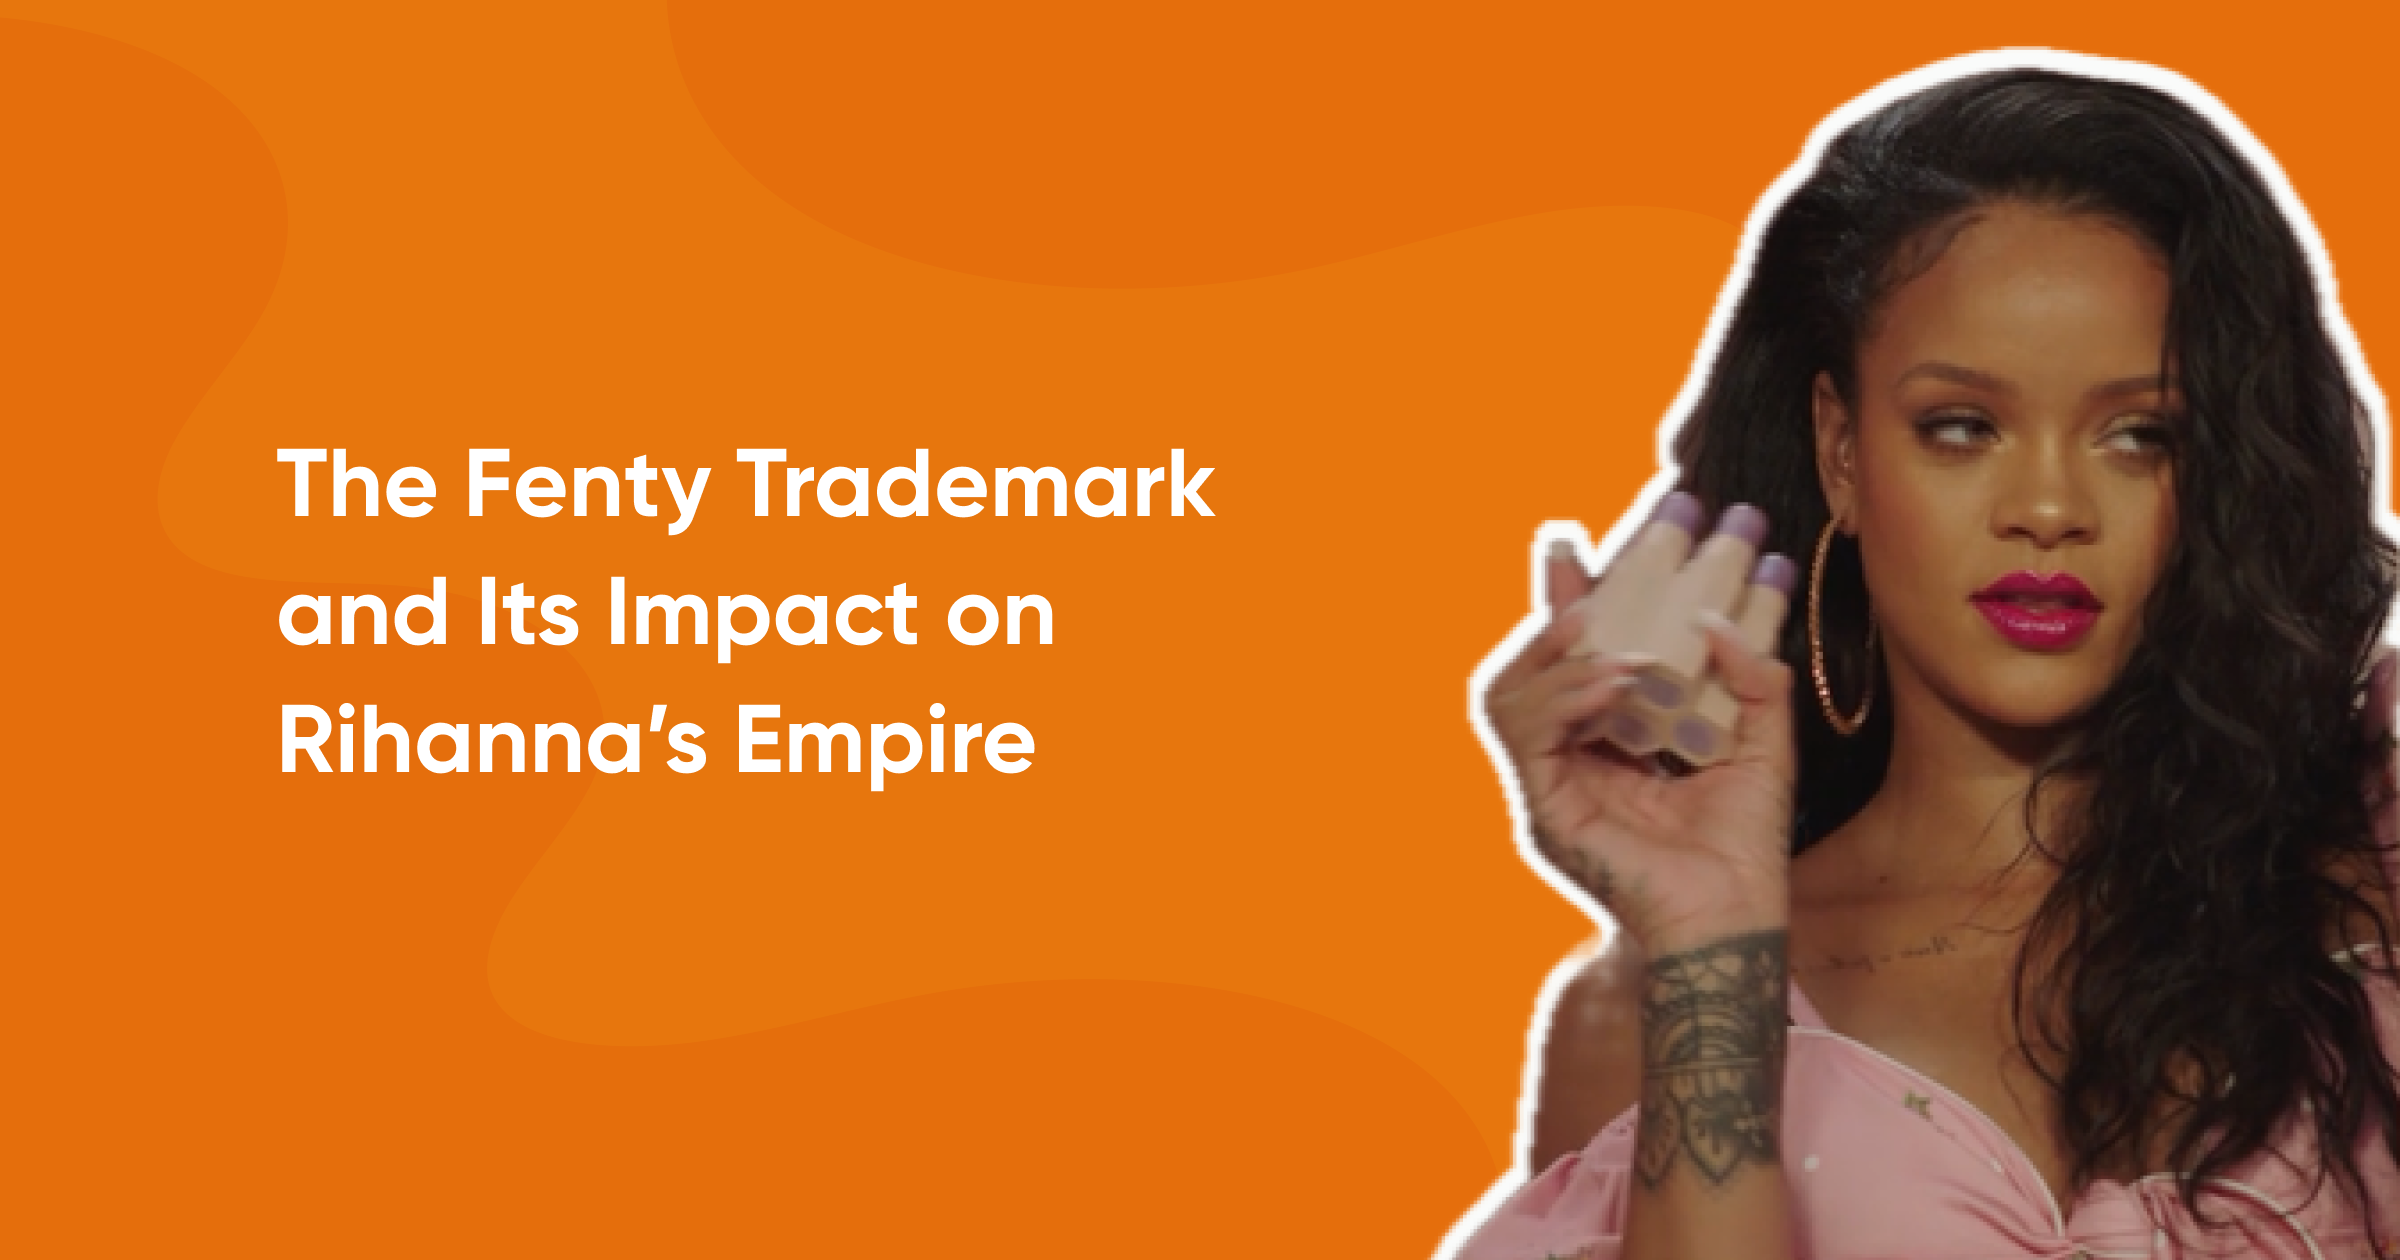 The Fenty Trademark and Its Impact on Rihanna’s Empire